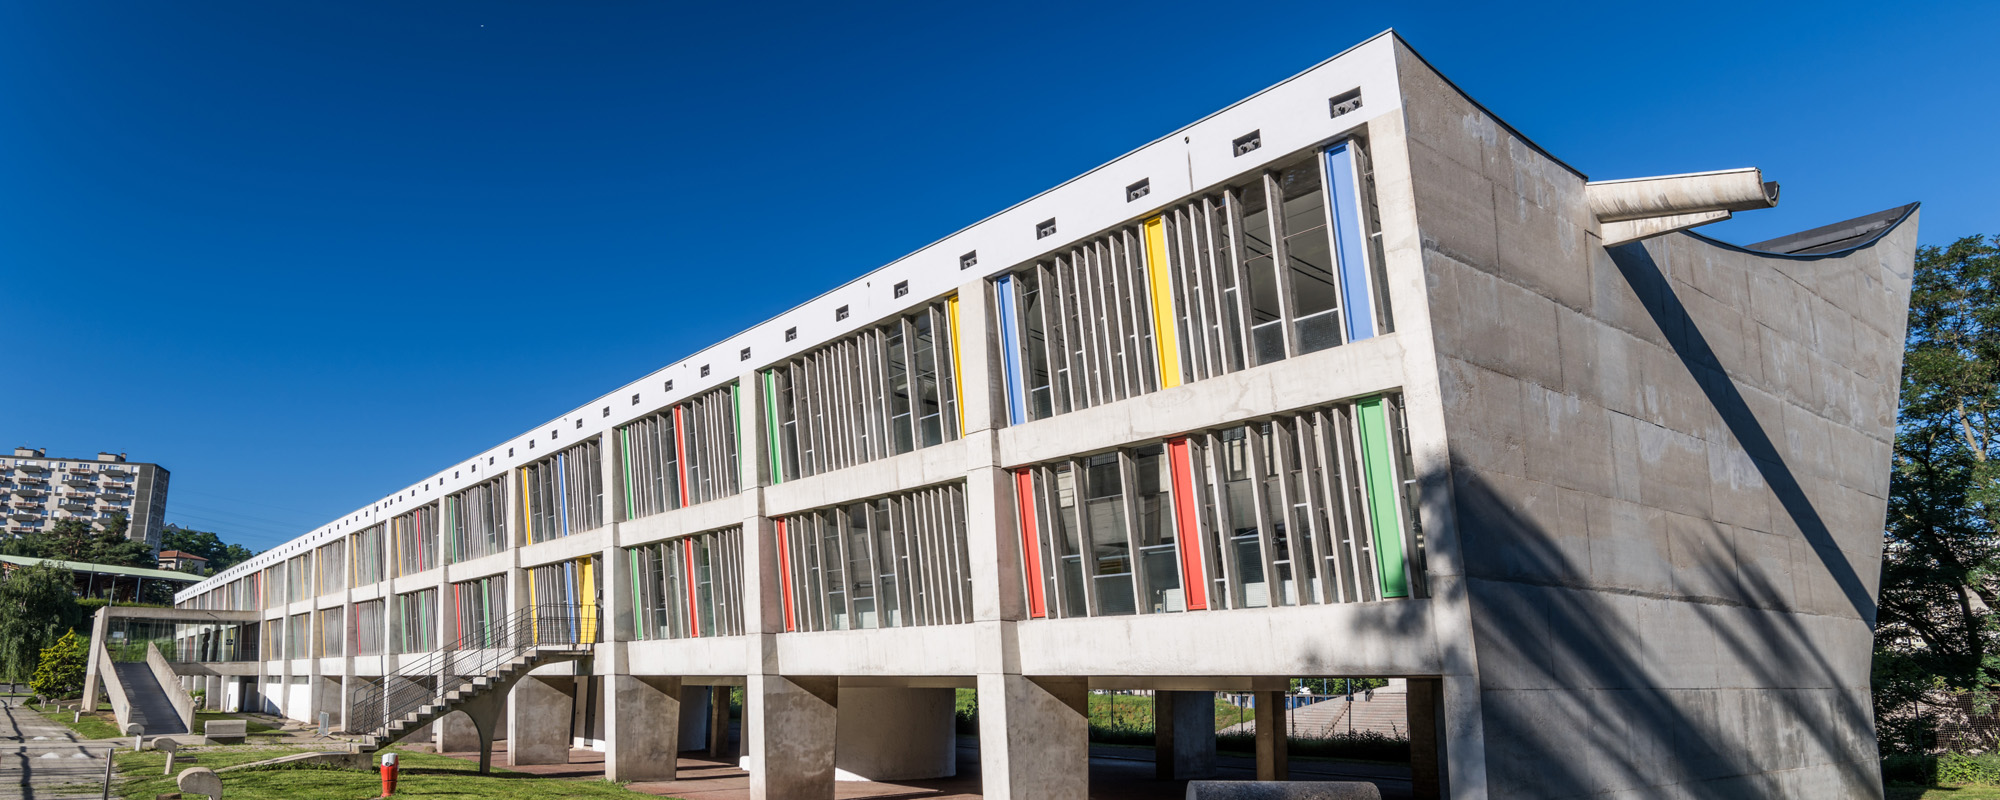 Maison de la culture - Fondation le Corbusier / Saint-Etienne tourisme / Arnaud Frich